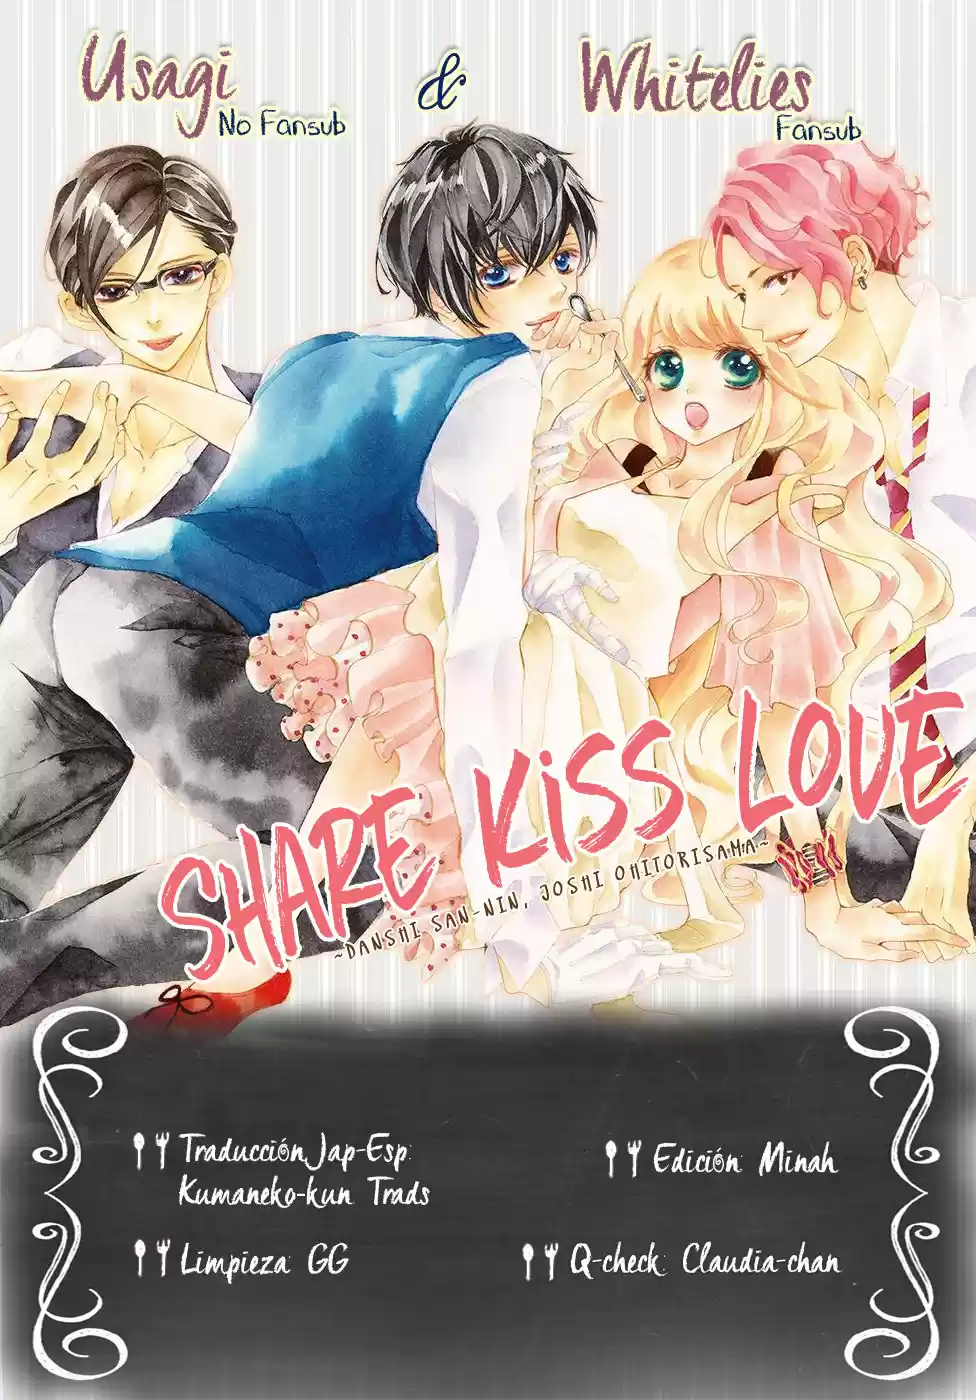 Share Kiss Love - Danshi San-nin, Joshi Ohitorisama: Chapter 9 - Page 1